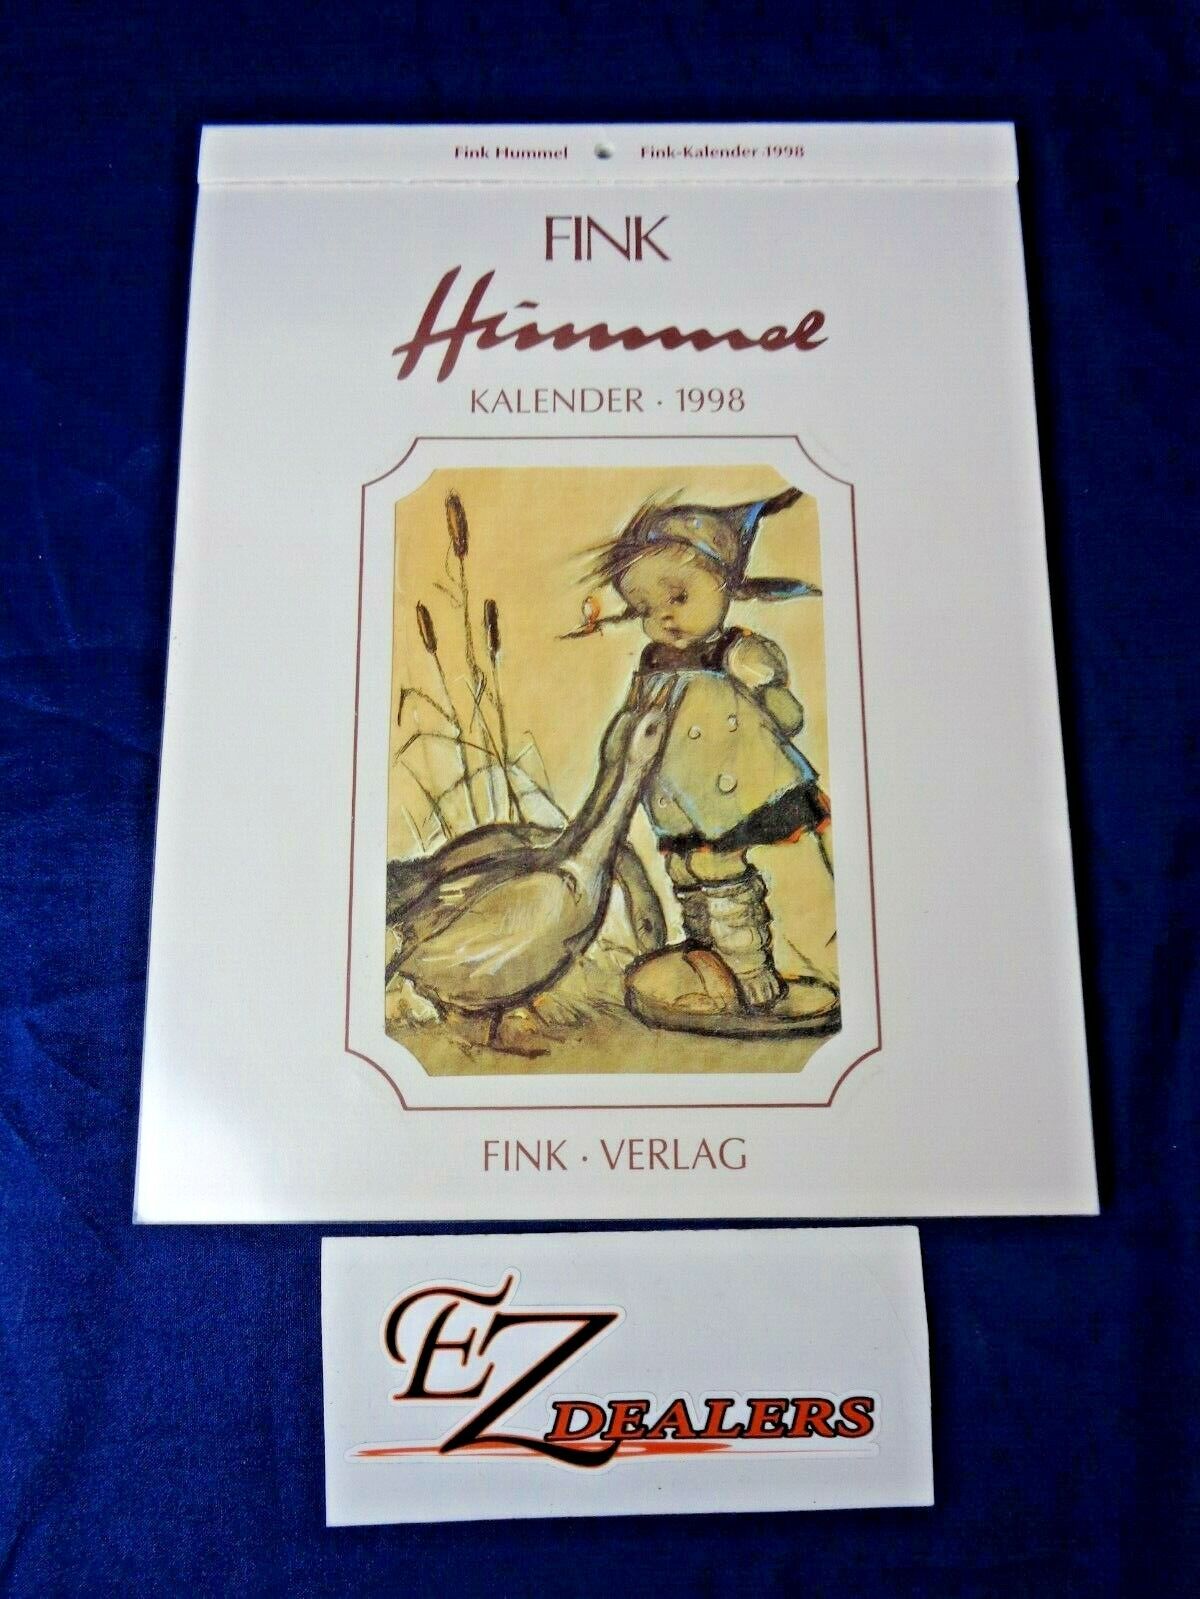 Vintage Hummel Fink Kalendar 1998 